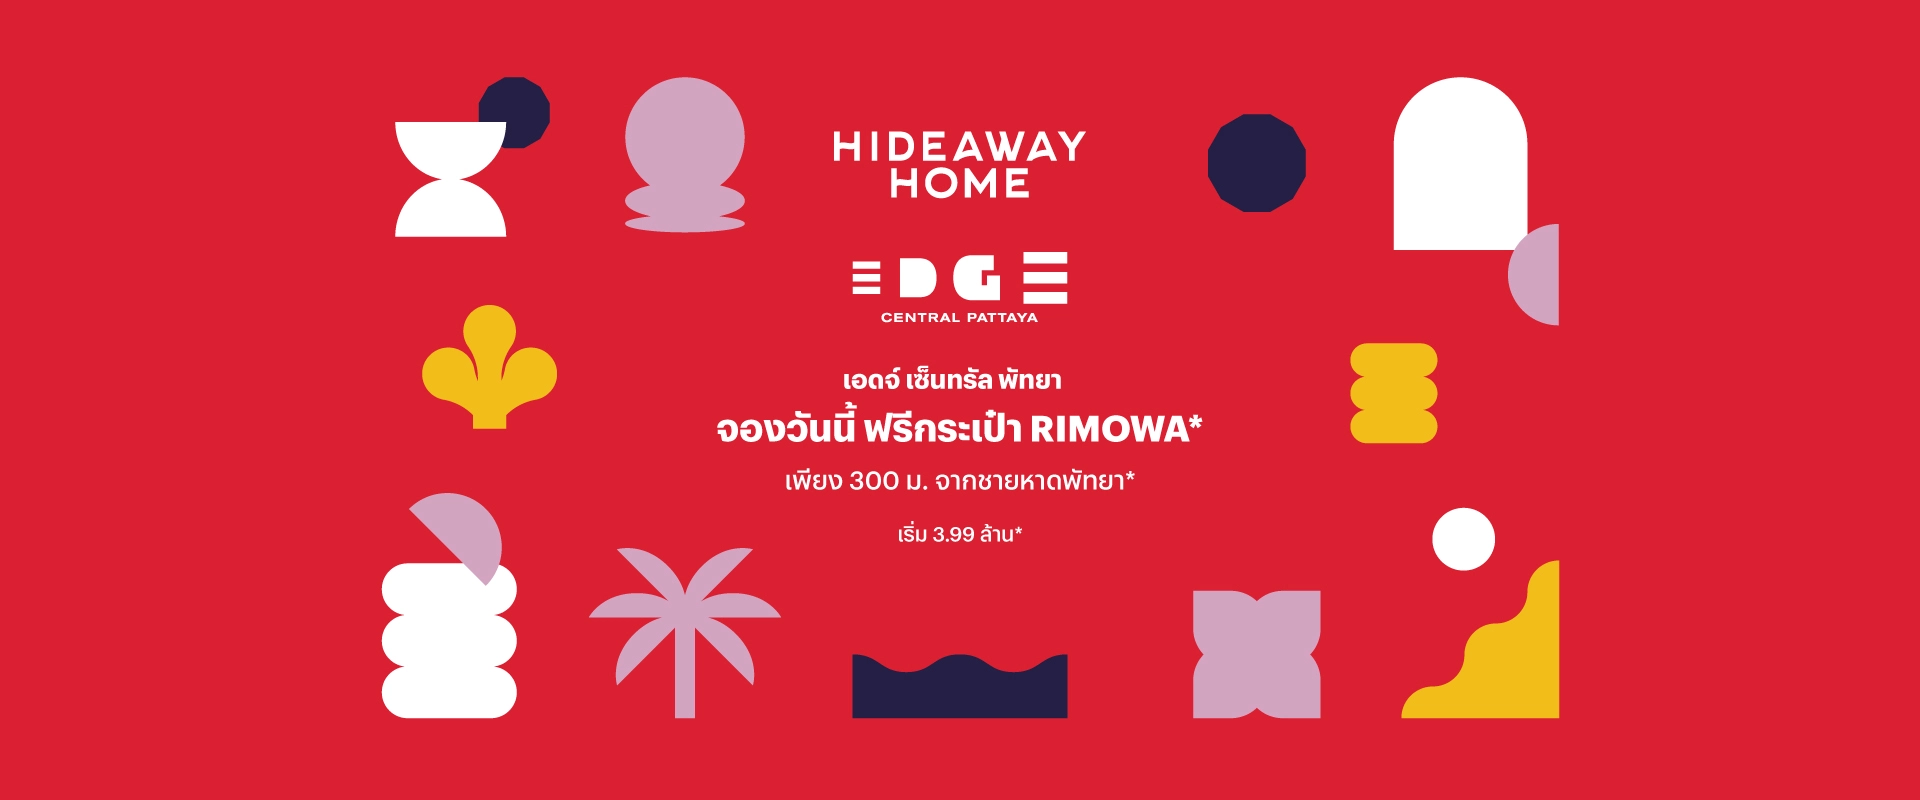 คอนโดมิเนียม เอดจ์ พัทยากลาง (EDGE Central Pattaya) desktop banner